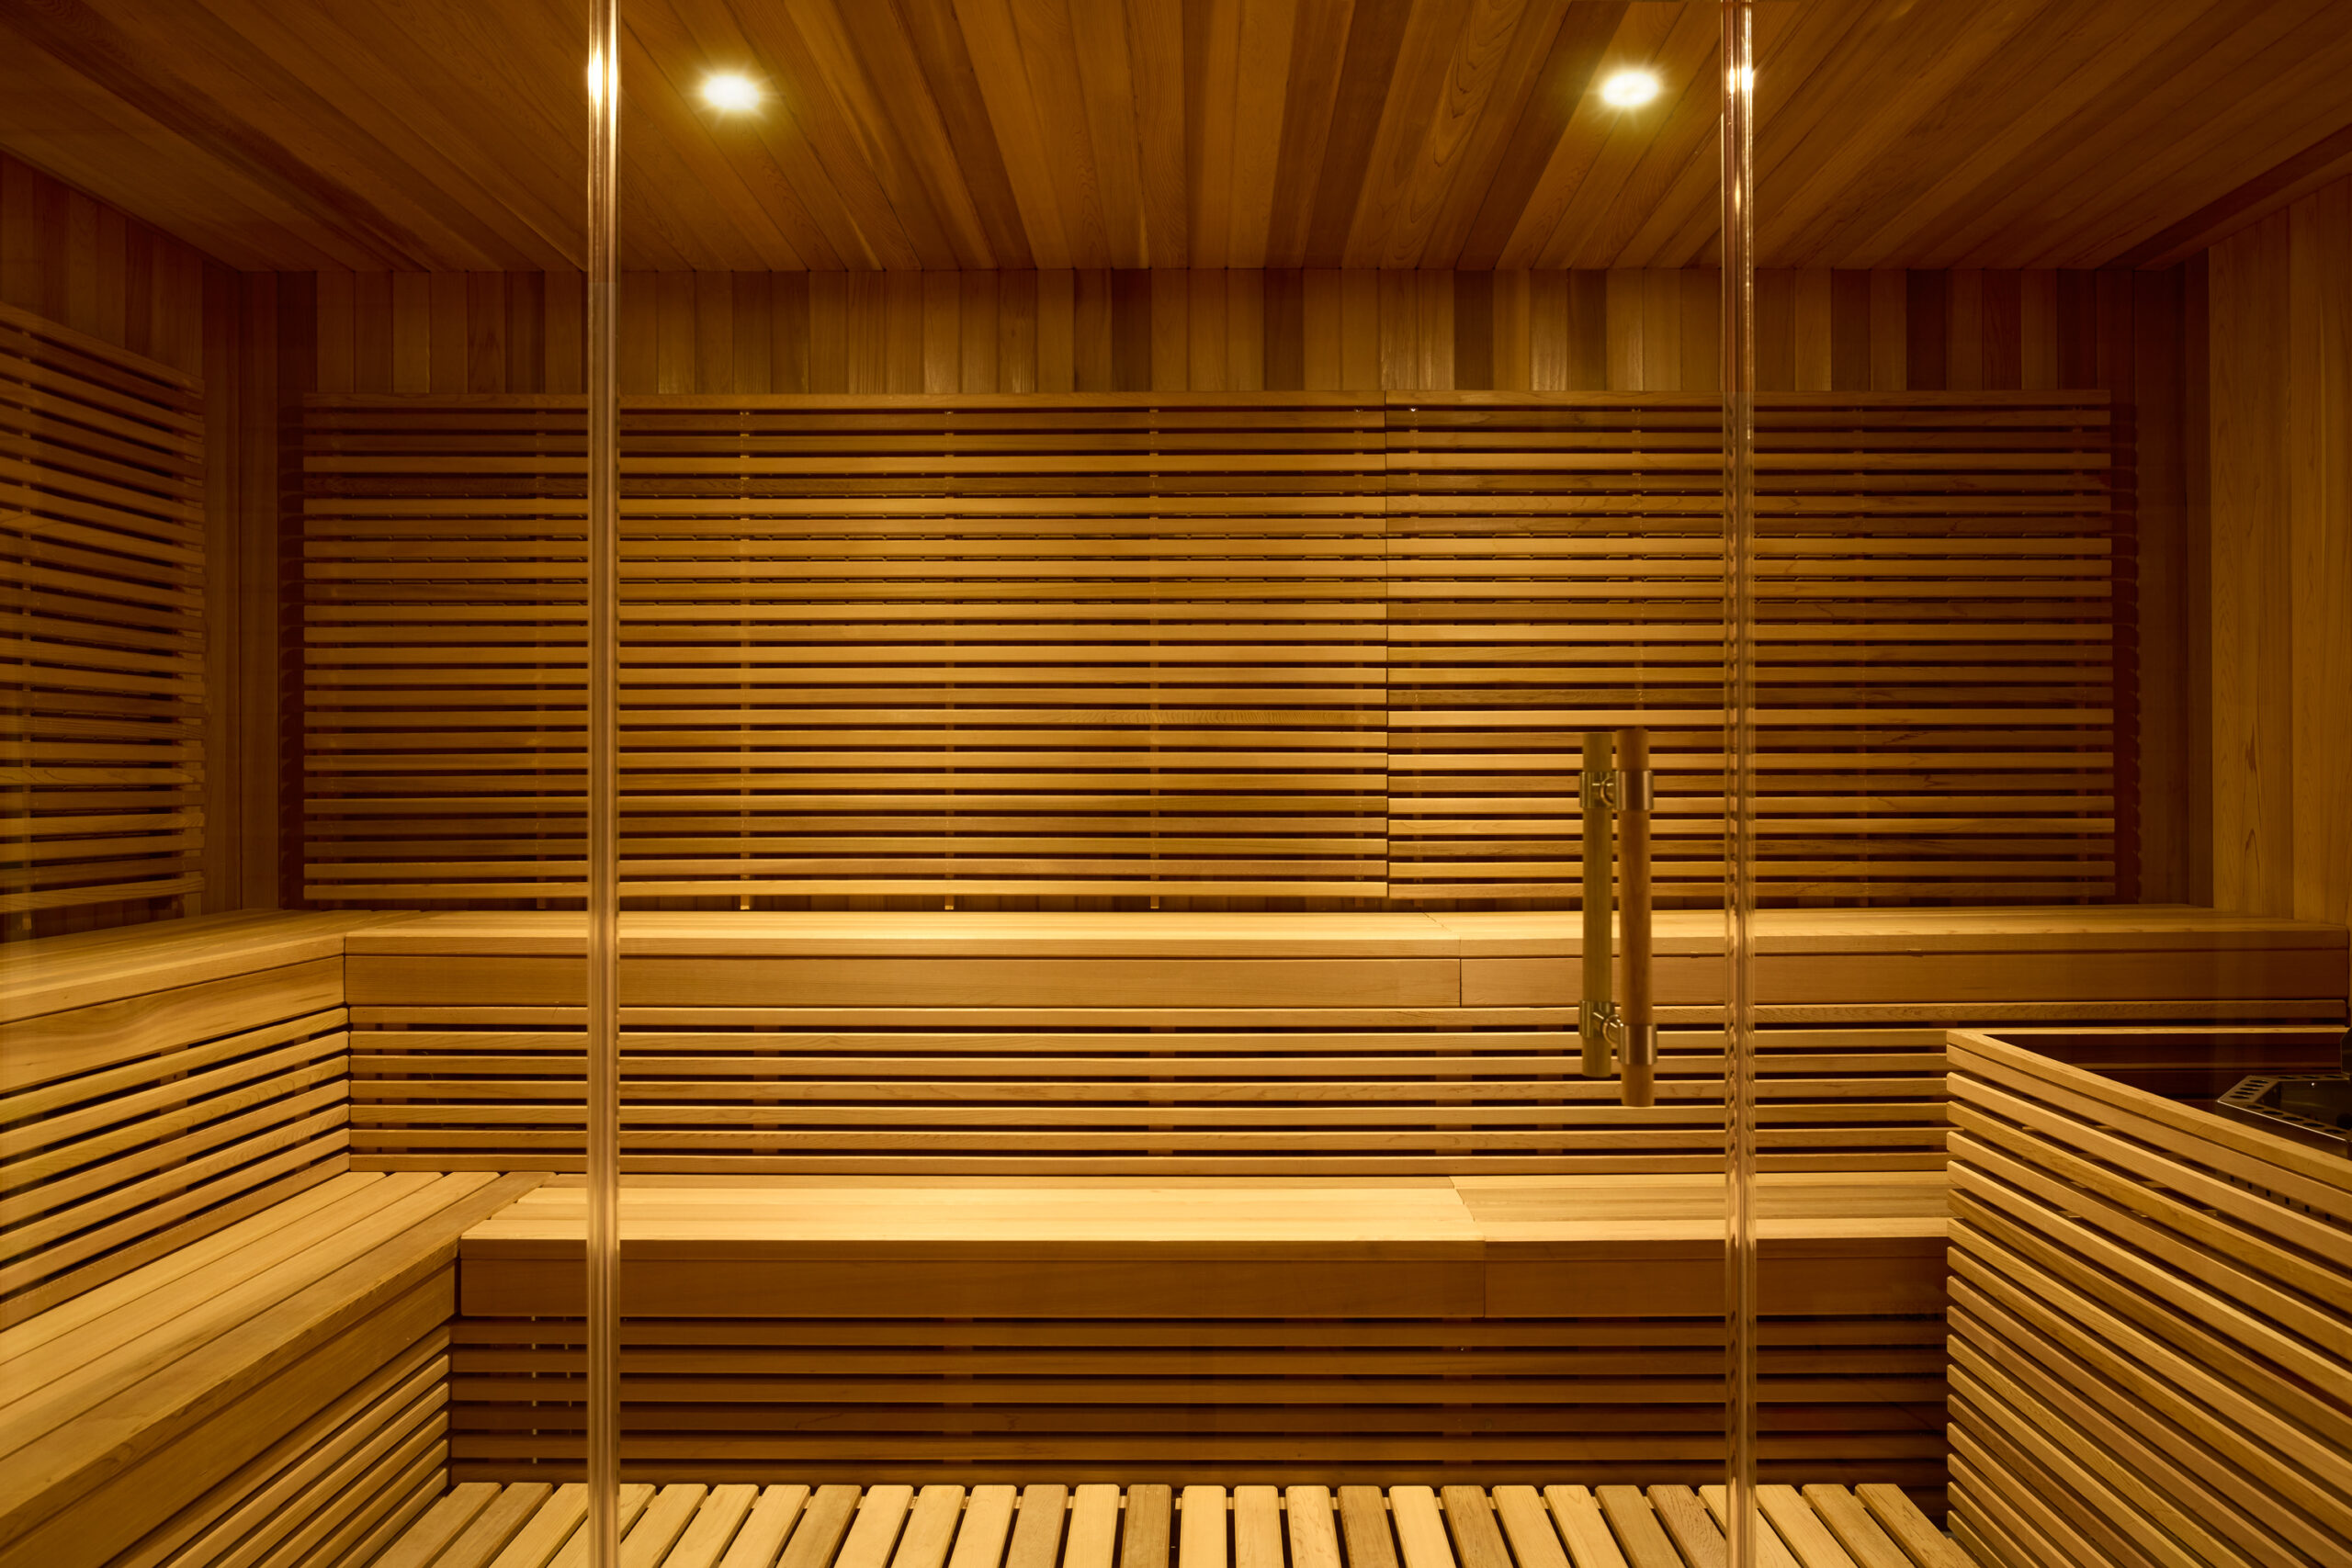 warmly lit, all wood sauna